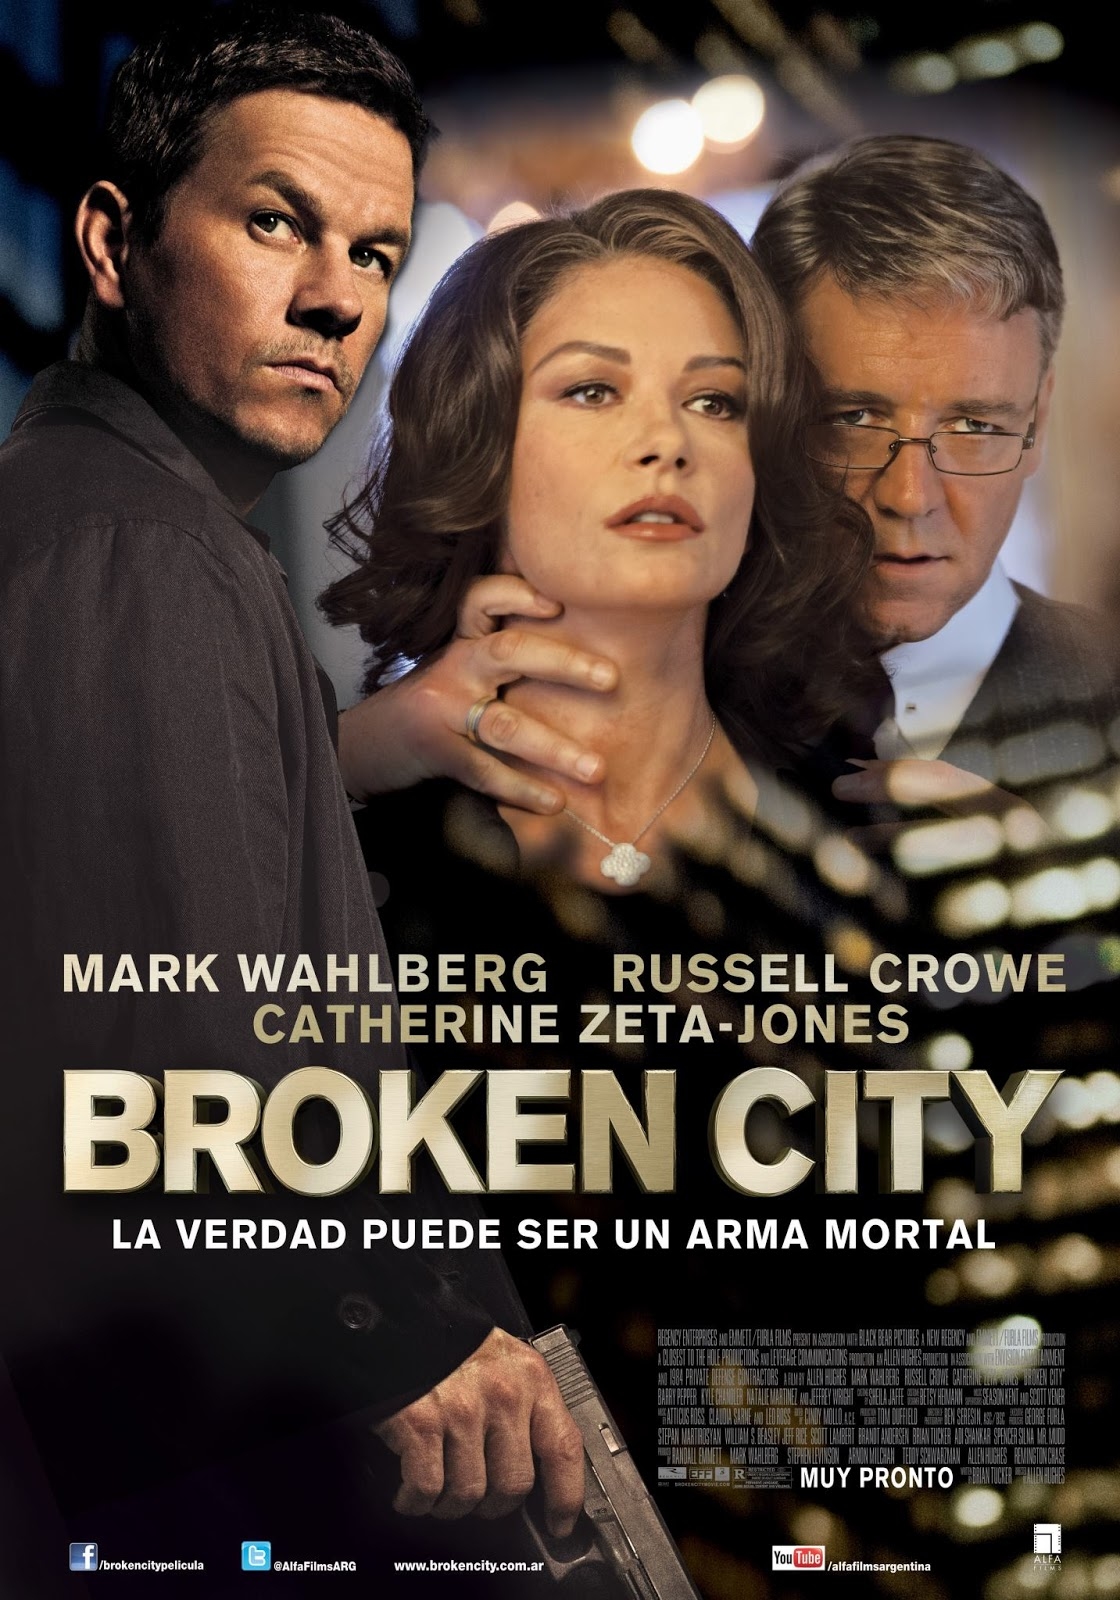 Broken City Broken City (Dvd), Mark Wahlberg Dvd's Adam